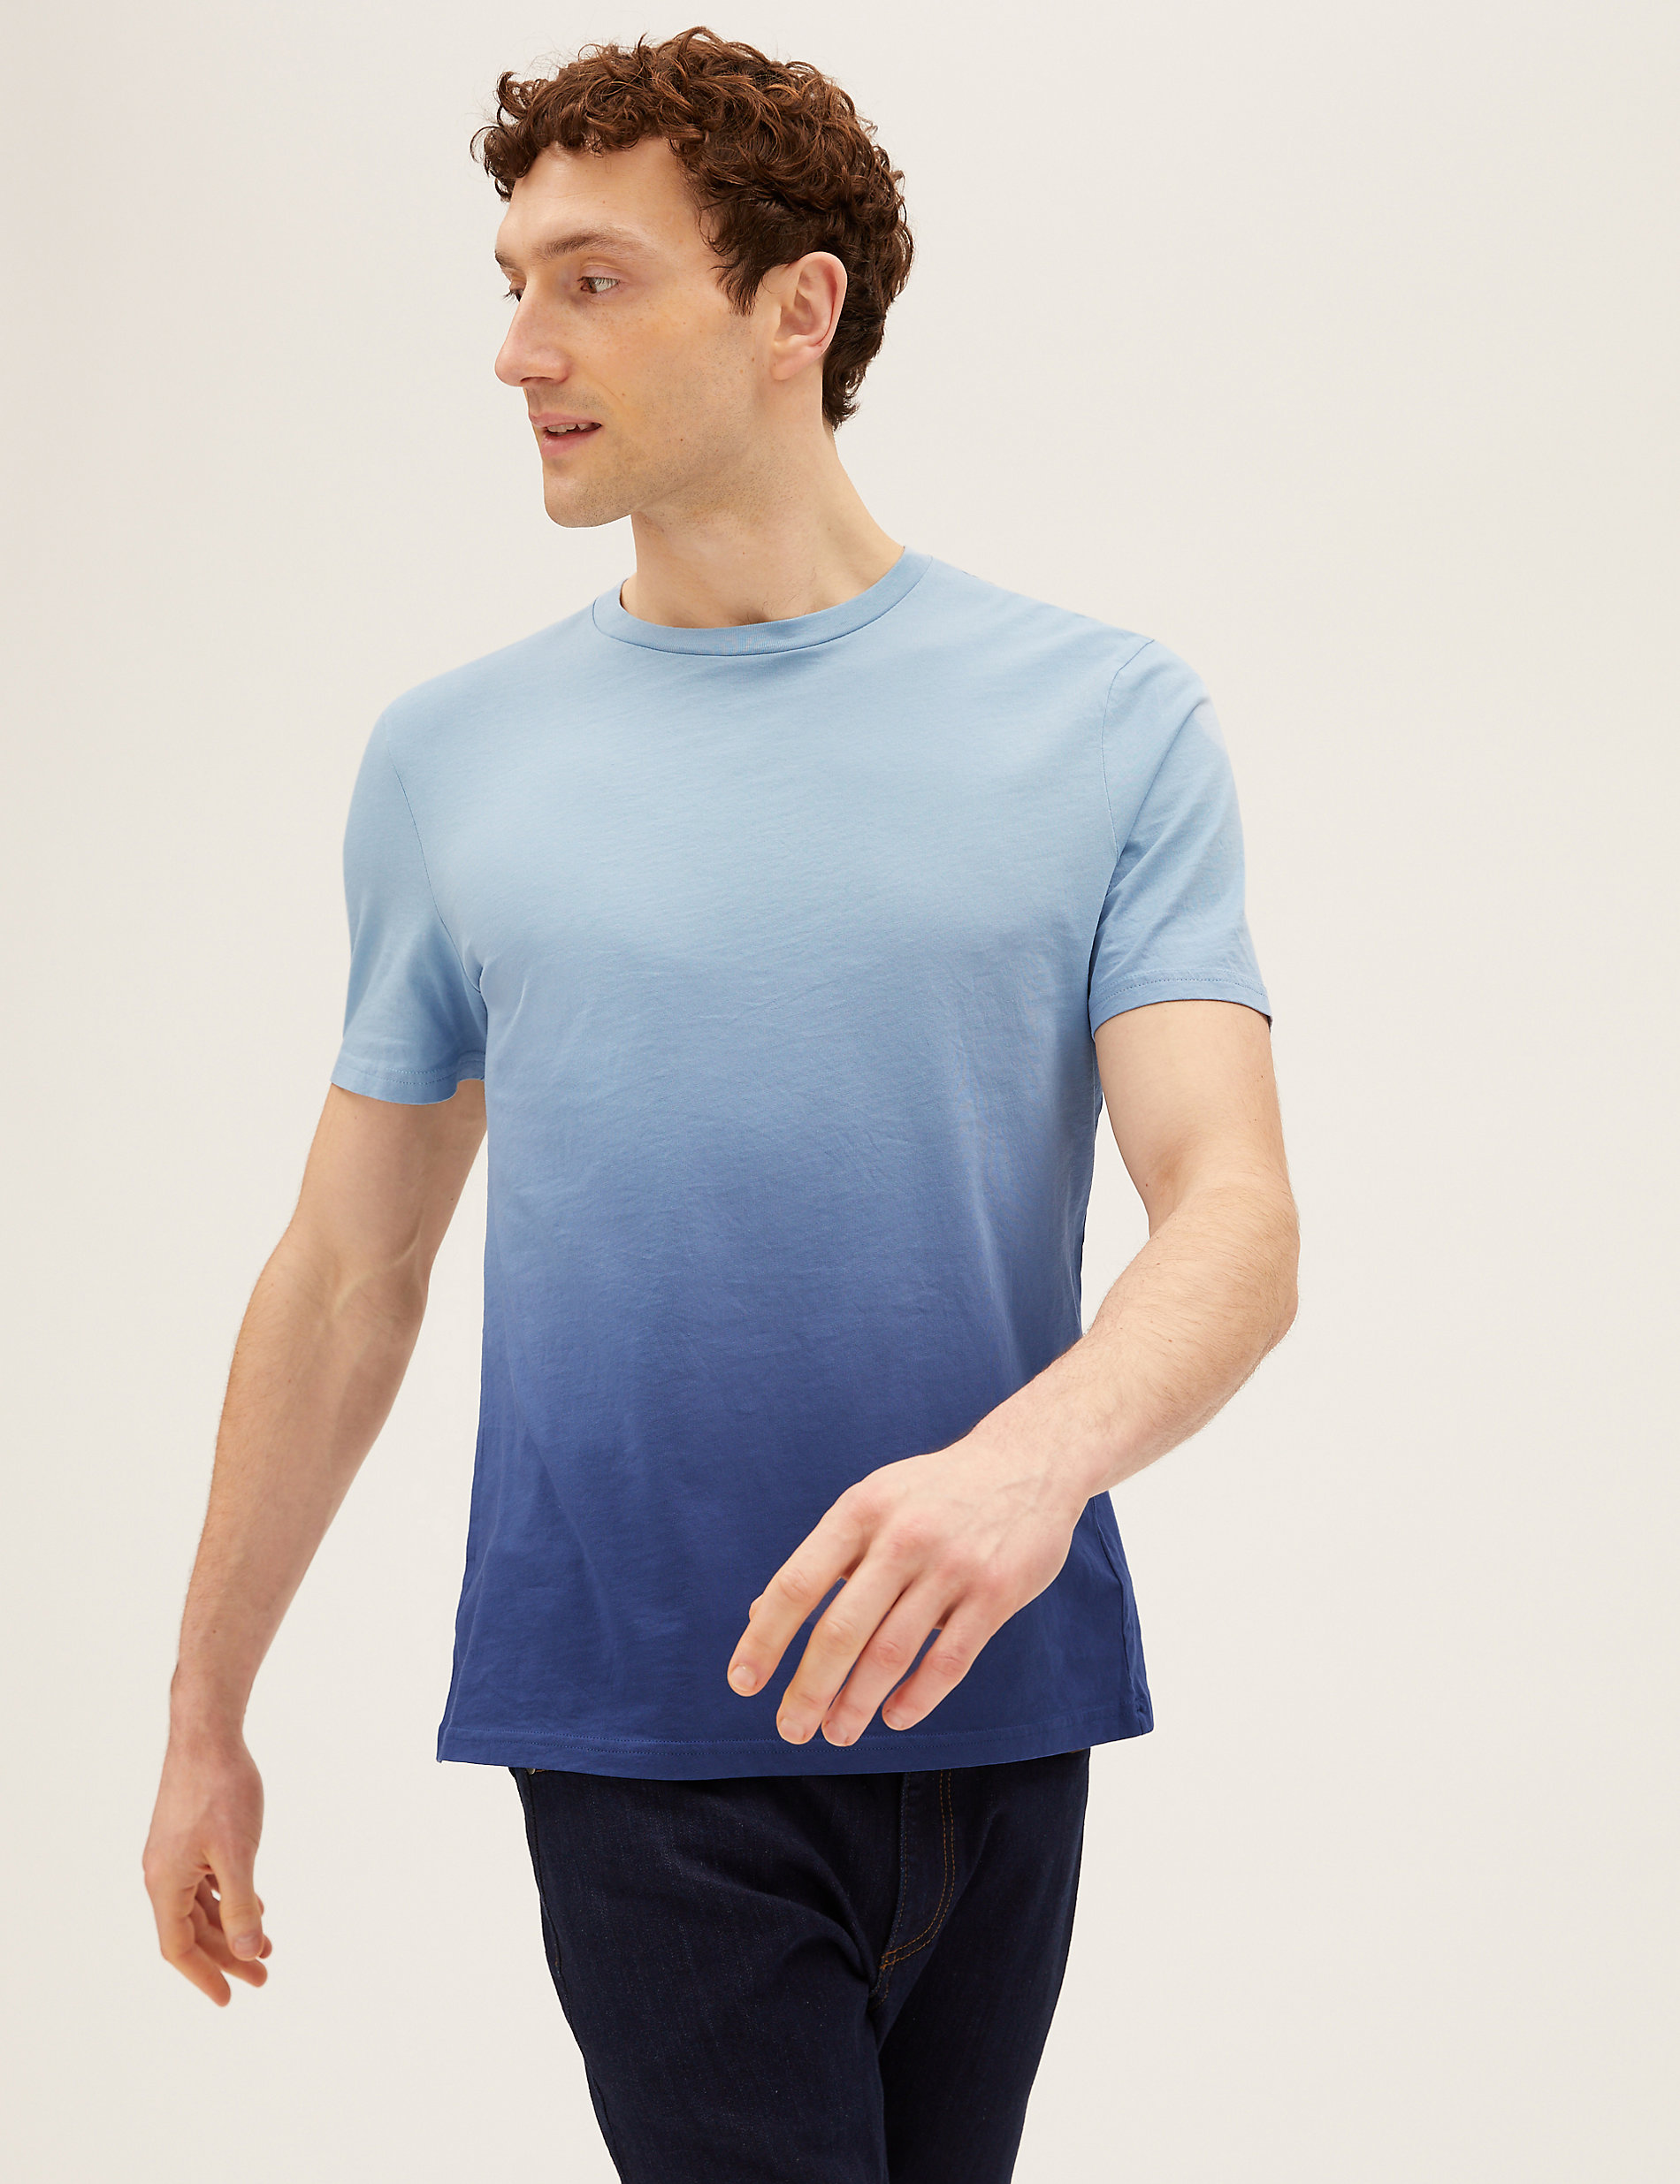 Kleding Unisex kinderkleding Tops & T-shirts 3-delige custom set 